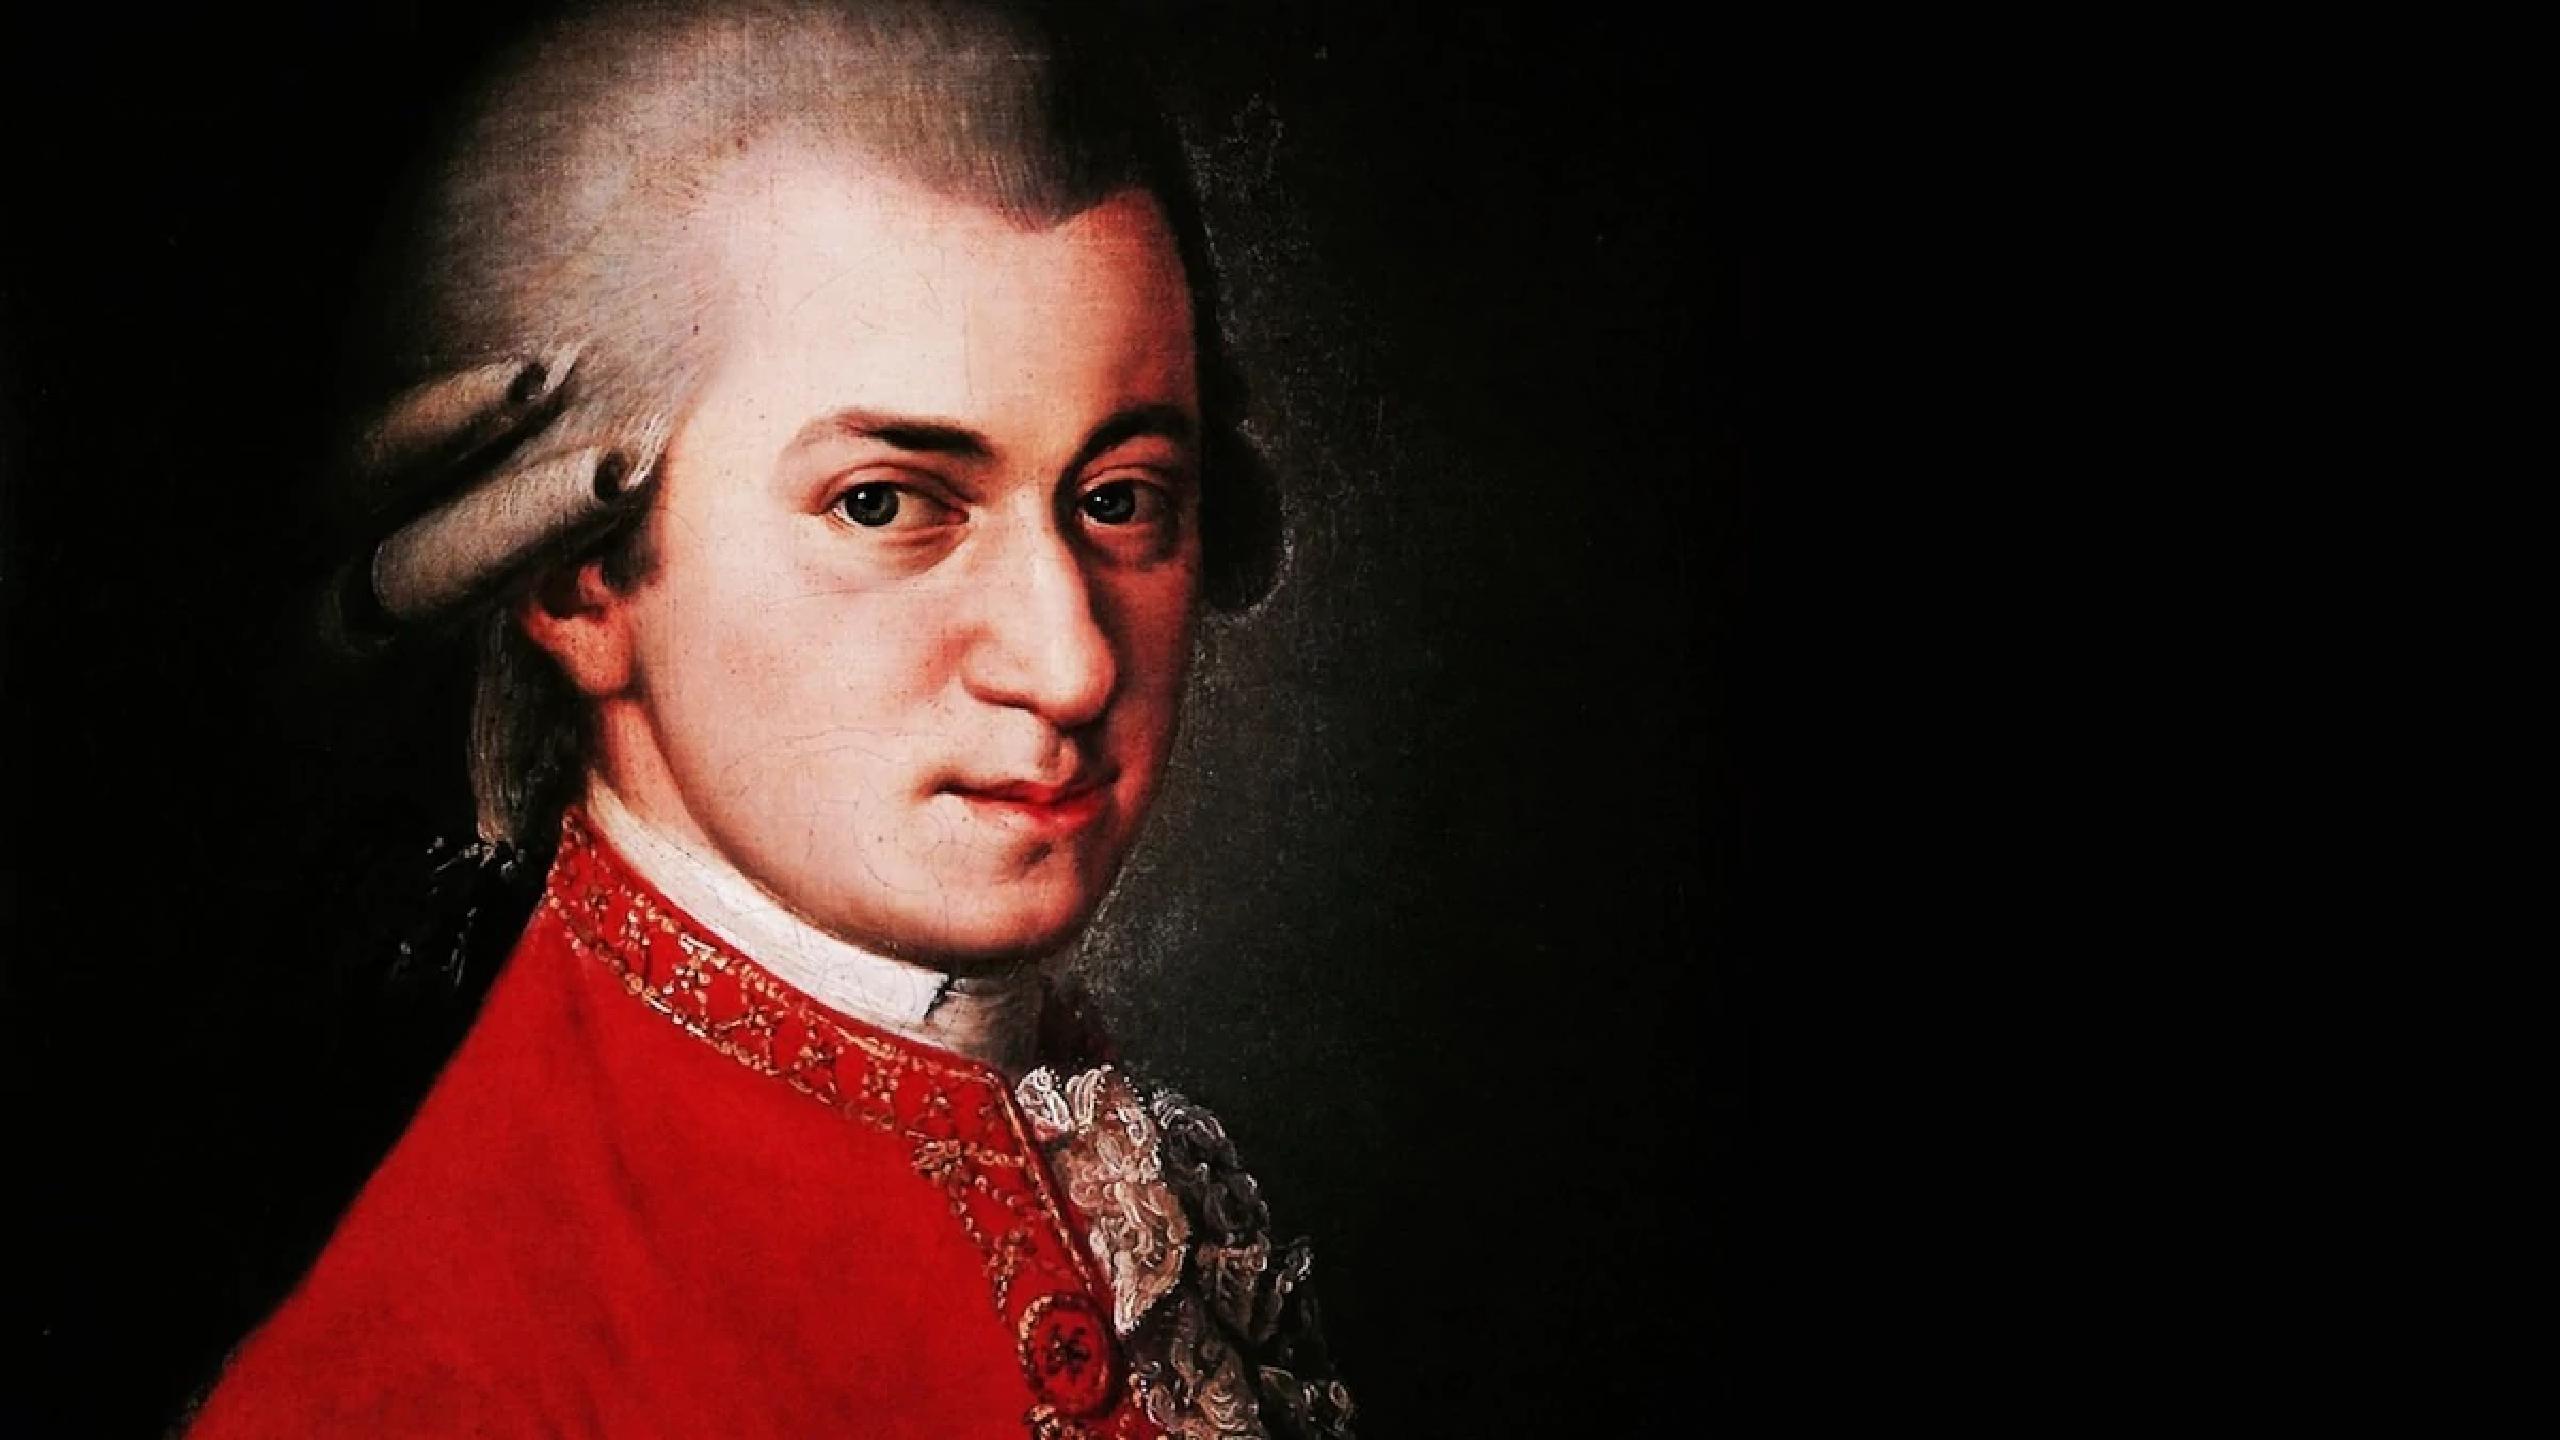 Какого композитора прозвали итальянским моцартом 7 букв